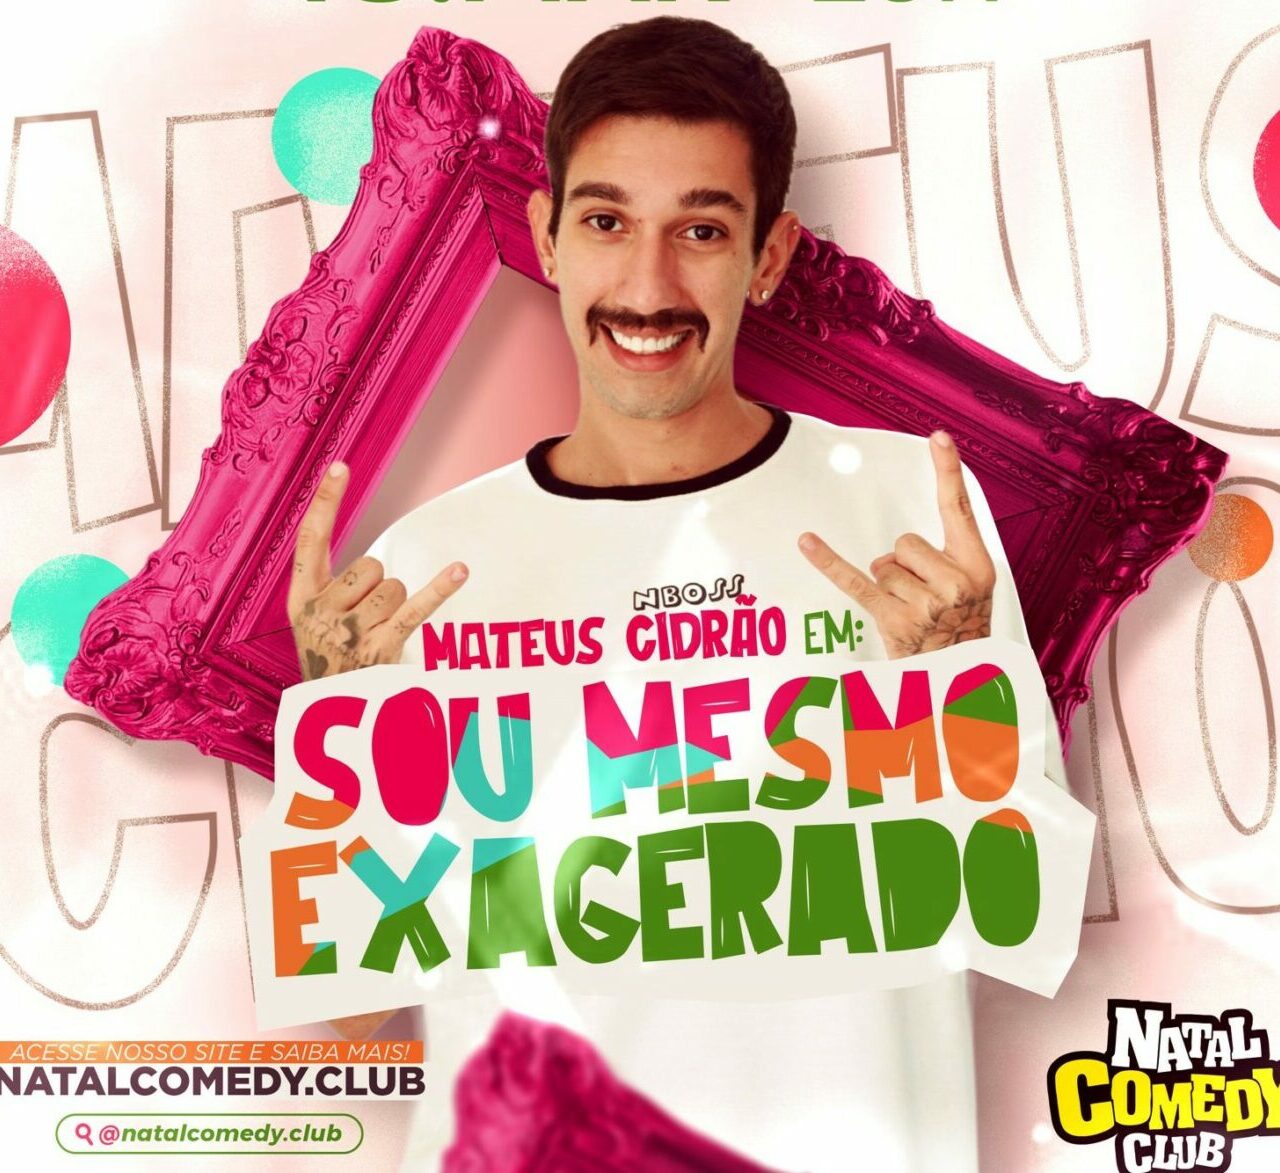 Mateus Cidrão é uma das atrações do Natal Comedy Club